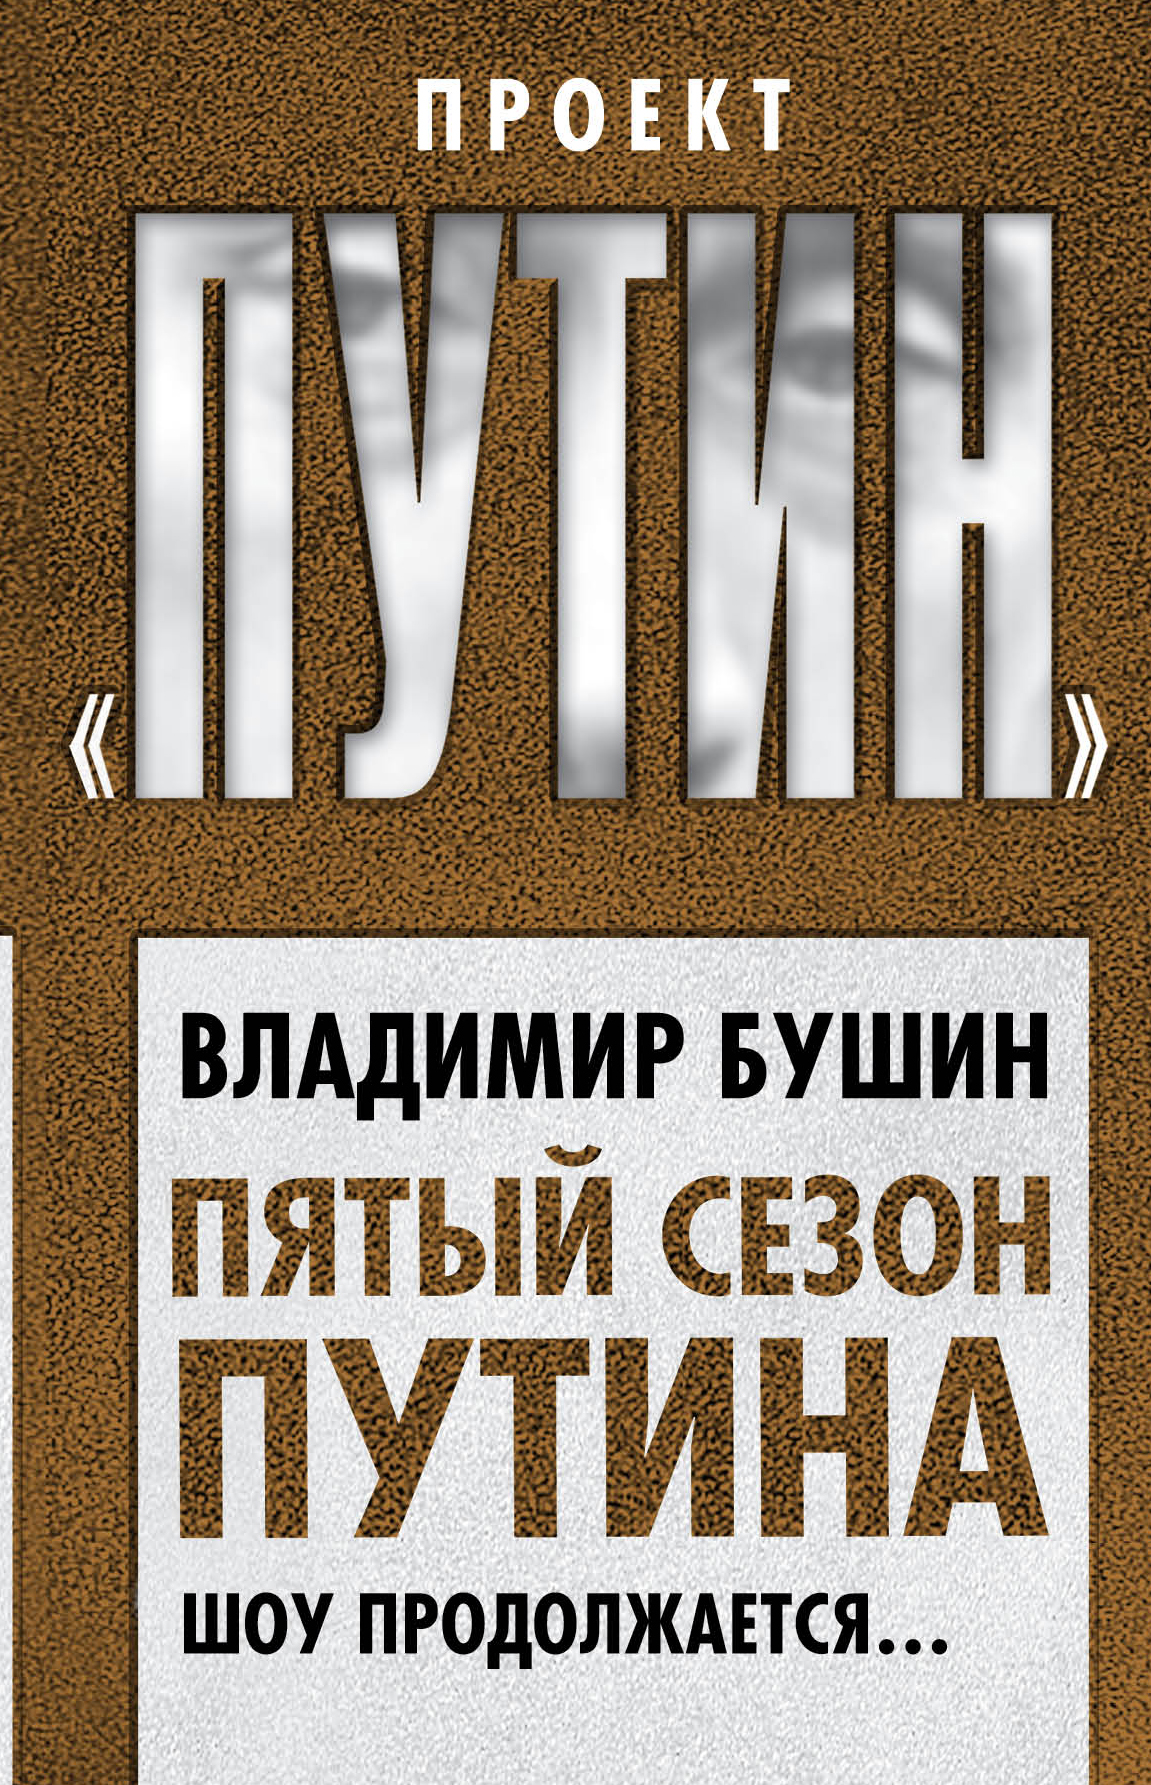 Книга Пятый сезон Путина. Шоу продолжается… из серии , созданная Владимир Бушин, может относится к жанру Публицистика: прочее. Стоимость электронной книги Пятый сезон Путина. Шоу продолжается… с идентификатором 33394742 составляет 249.00 руб.